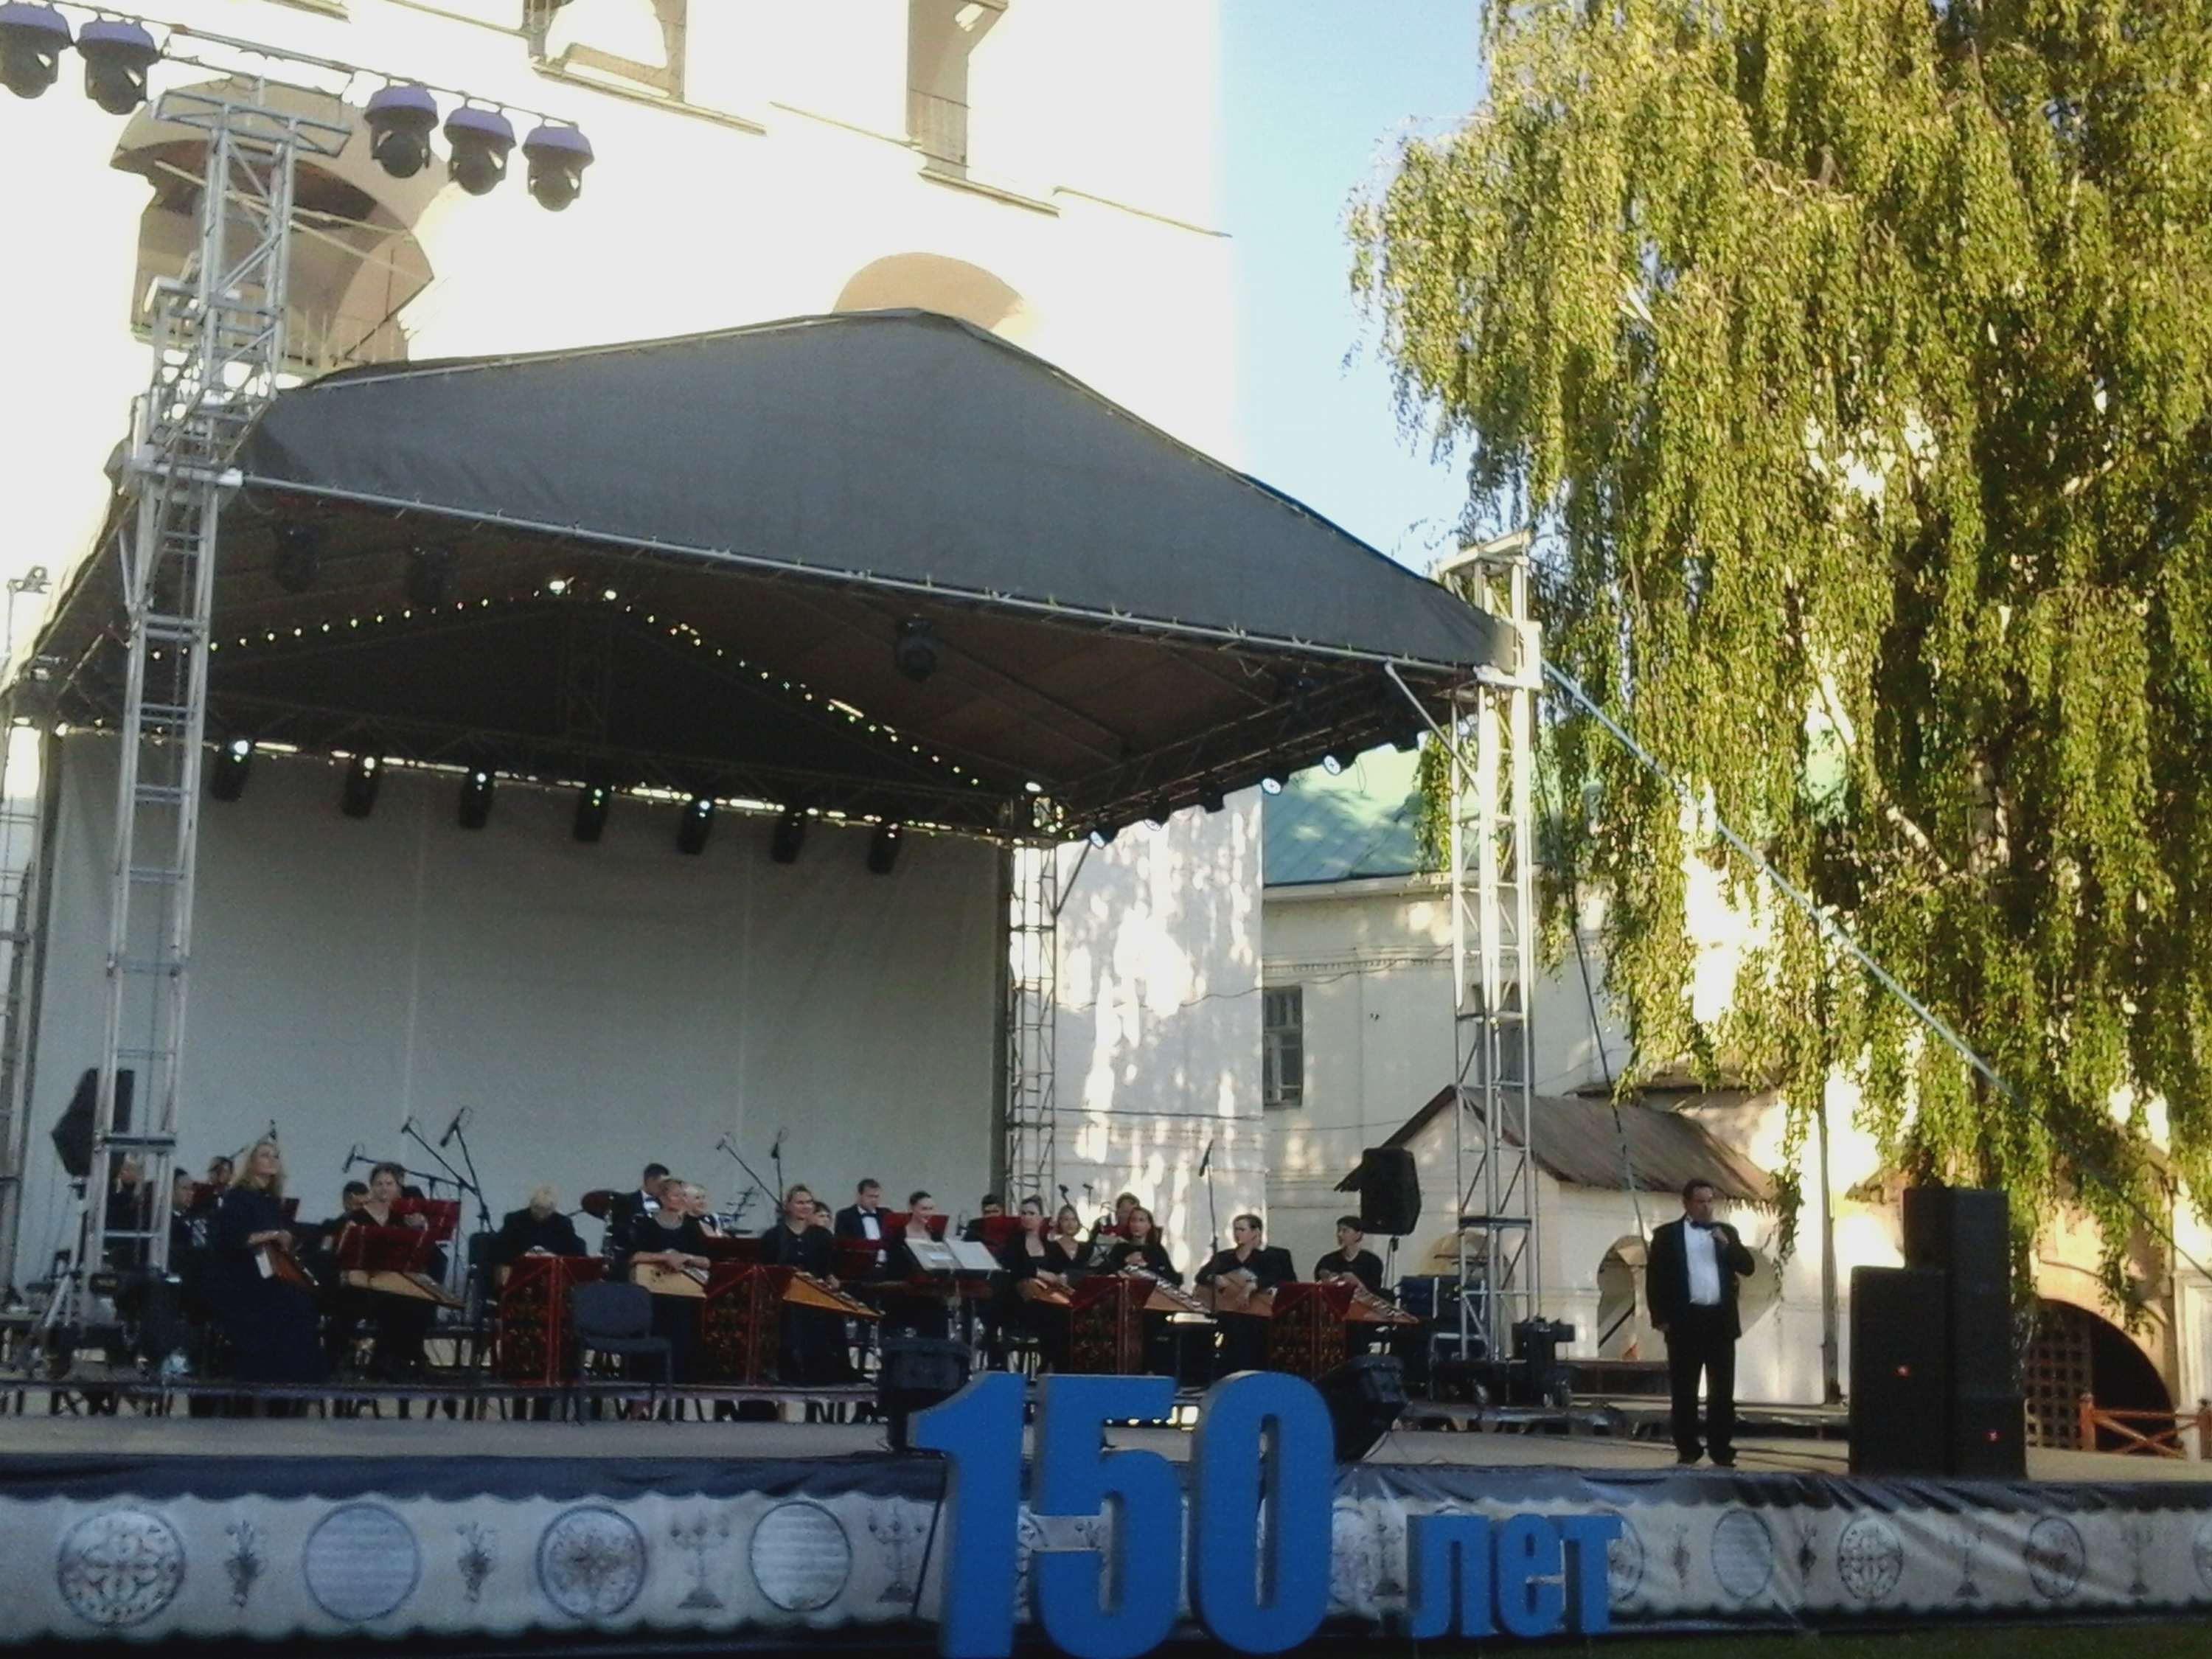 Moscow Region Philharmonic at “Preobrazheniye” festival